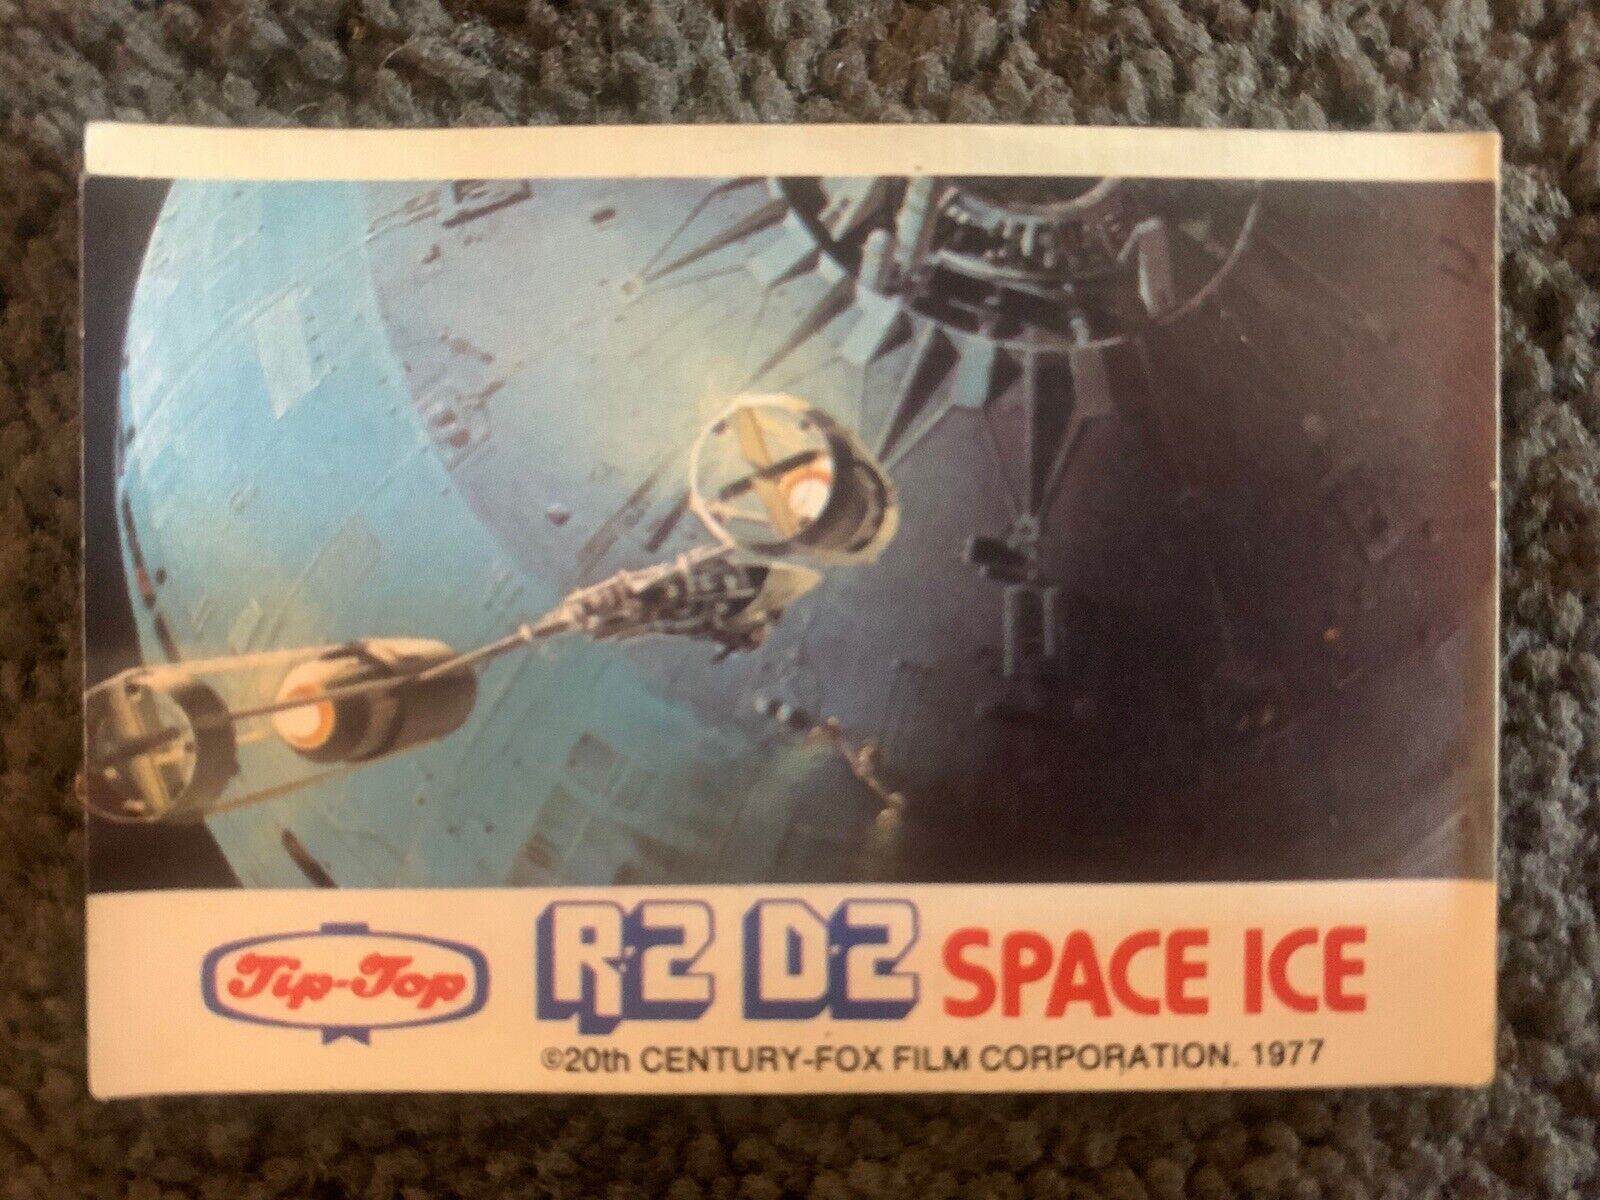 1977 Tip Top Star Wars R2-D2 Space Ice Sticker - Death Star